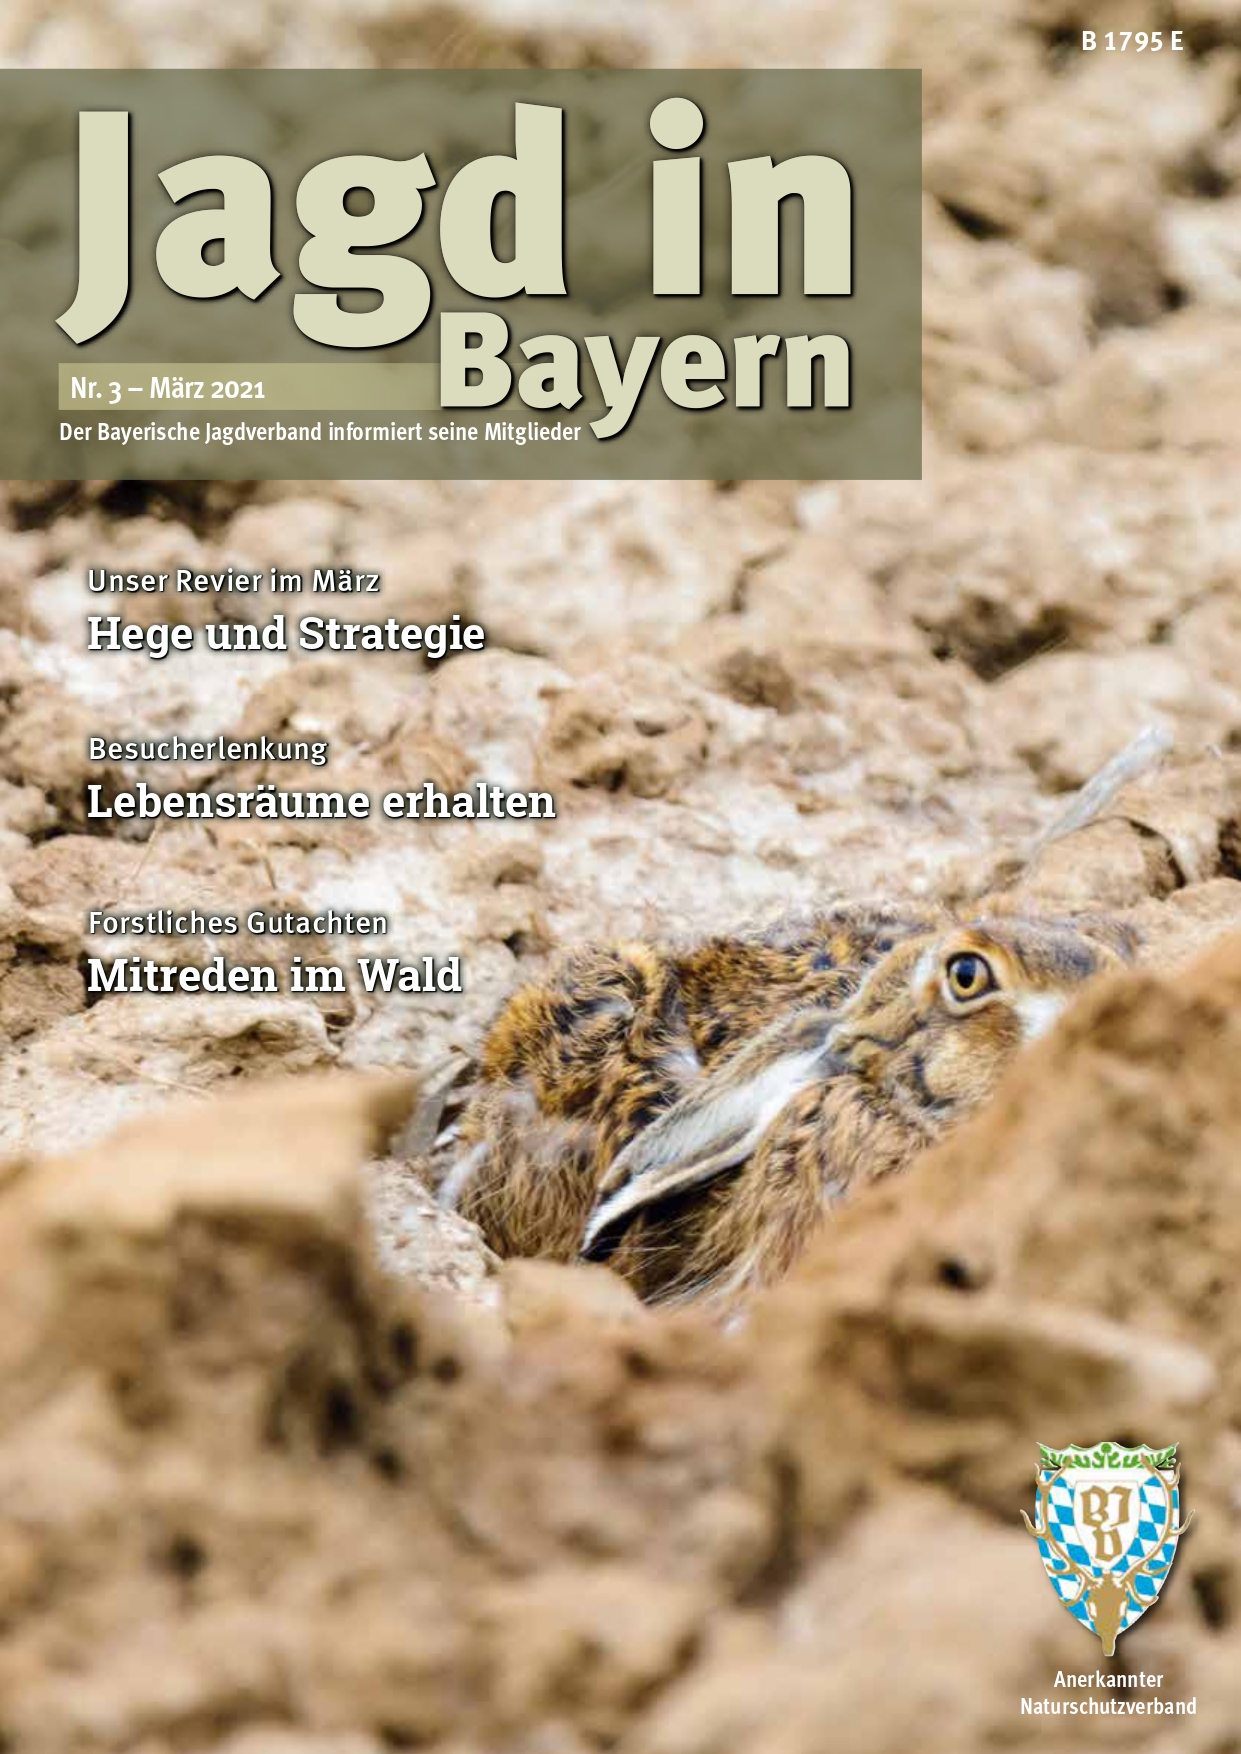 Titelseite der Jagd in Bayern Nr. 3 - März 2021